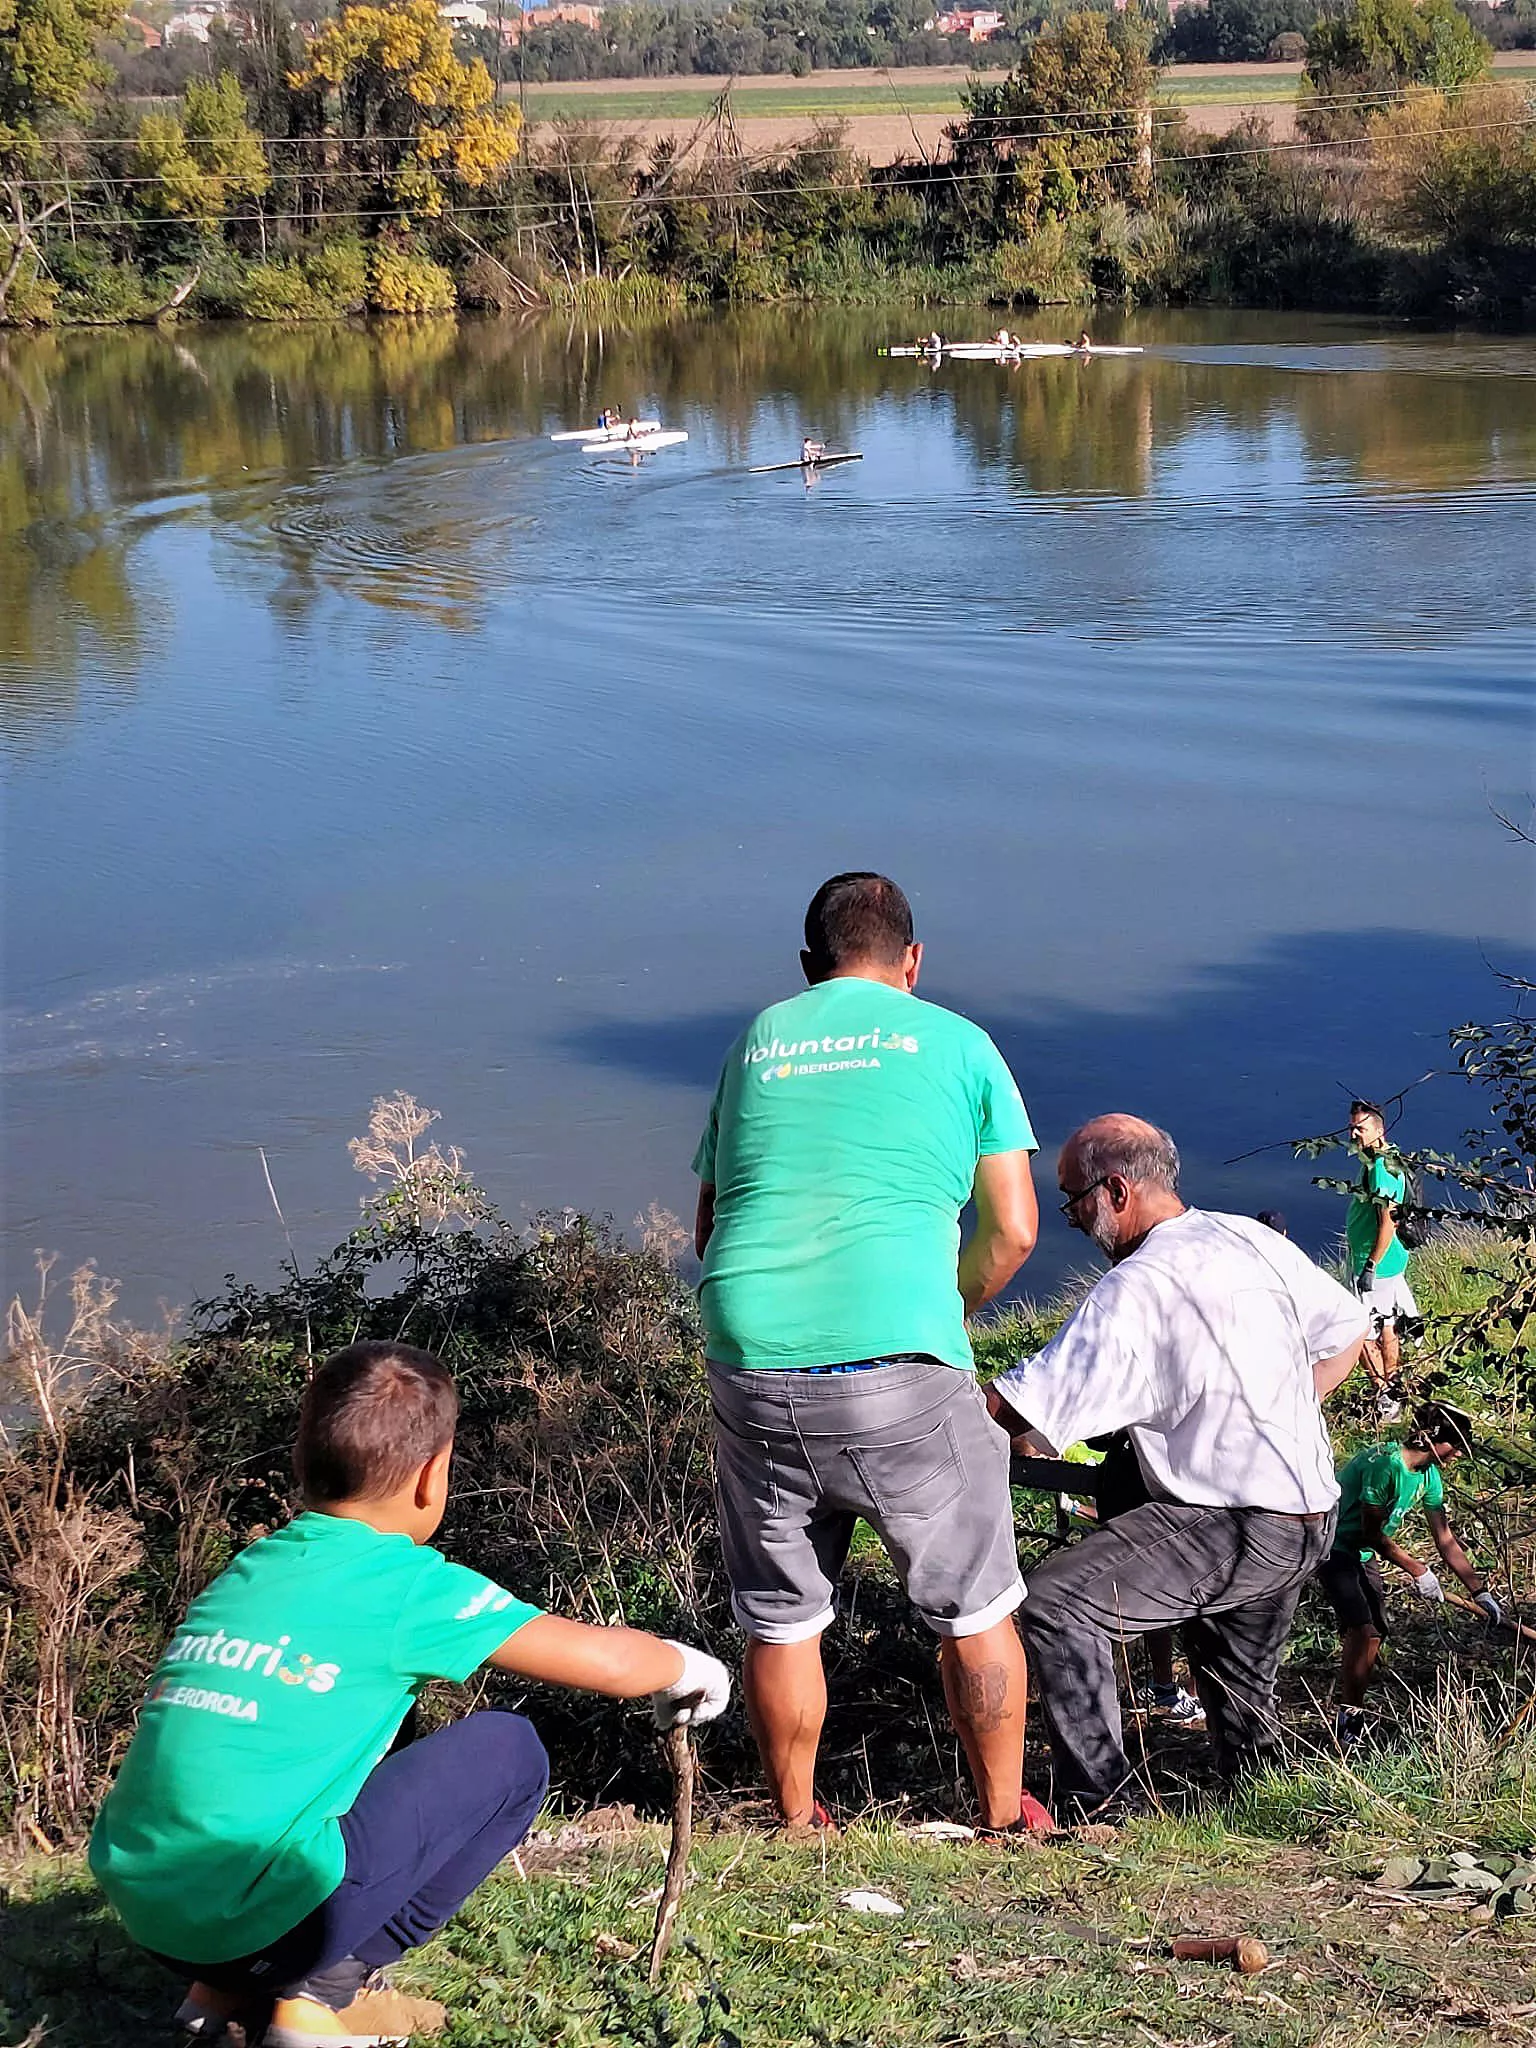  Iberdrola / ICAL . Más de 200 voluntarios de Iberdrola en Castilla y León, participan en diversas tareas medioambientales en Valladolid